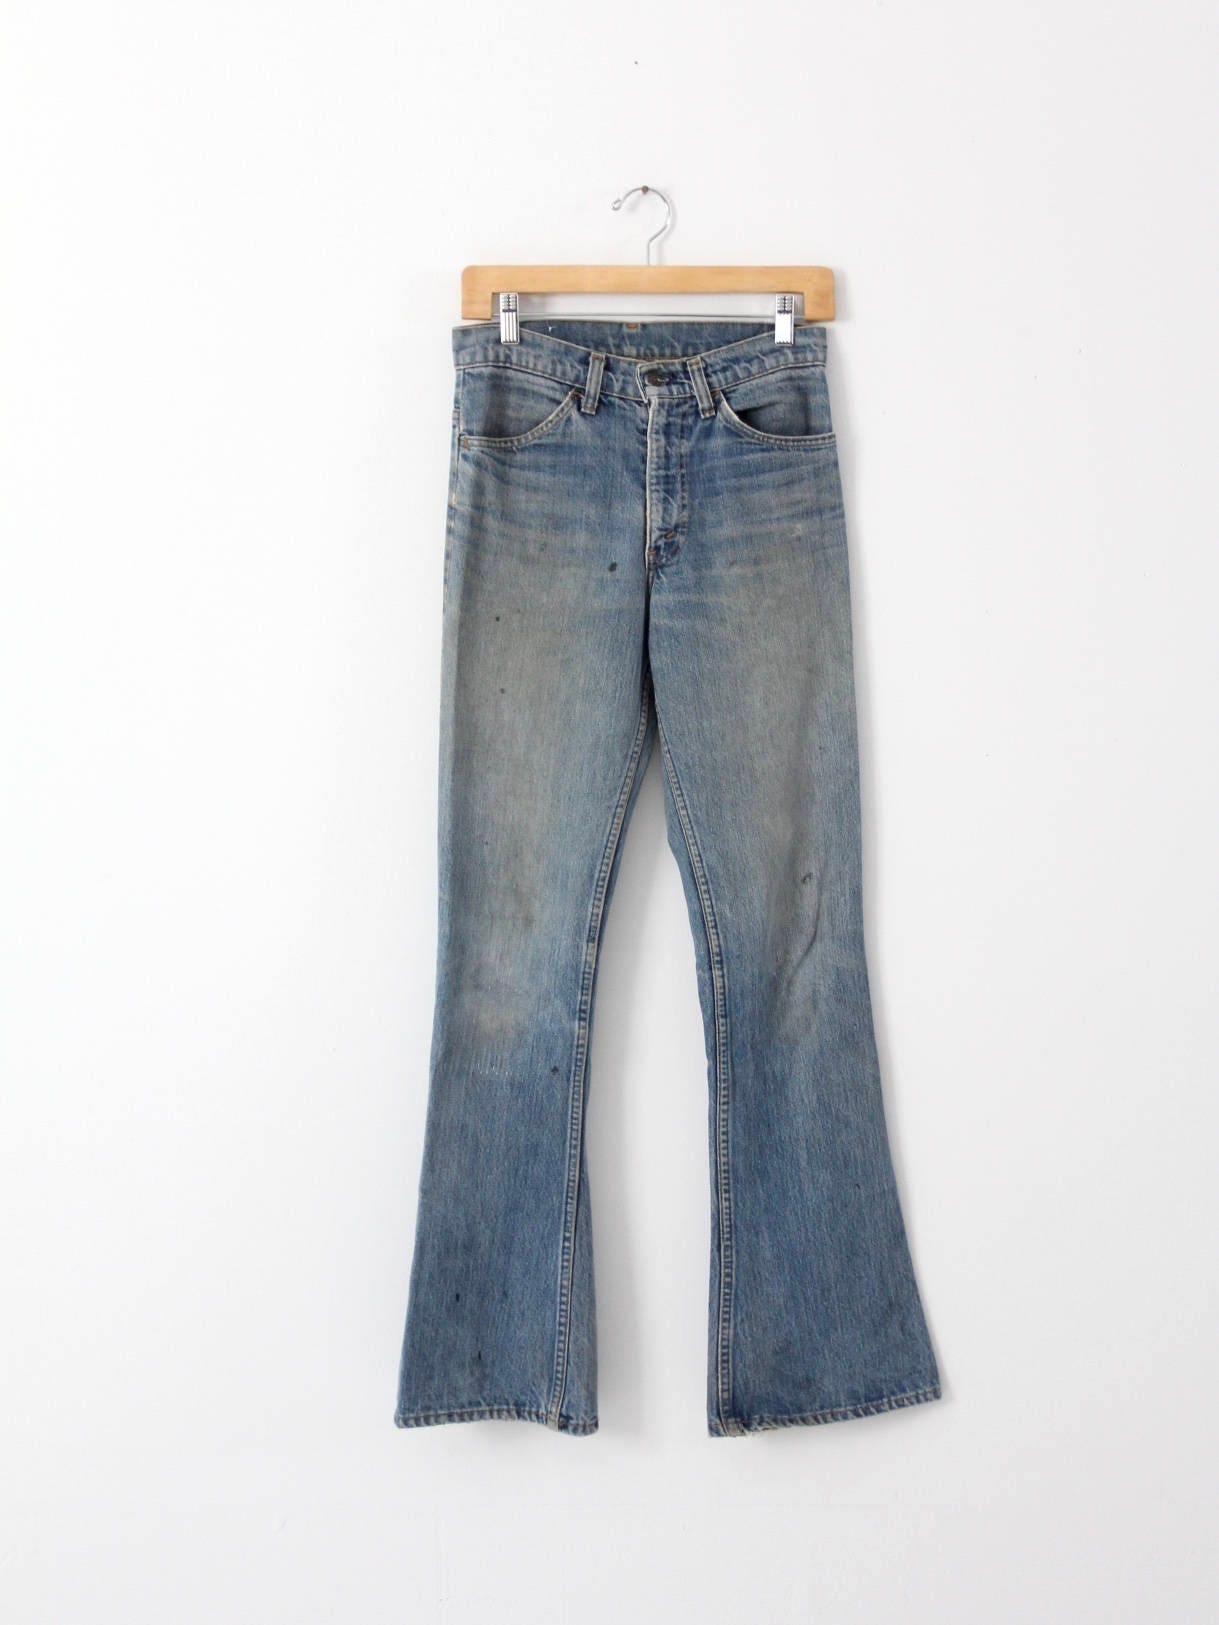 1970s Levis 646 jeans vintage Levis flare leg 29 x 32 | Etsy